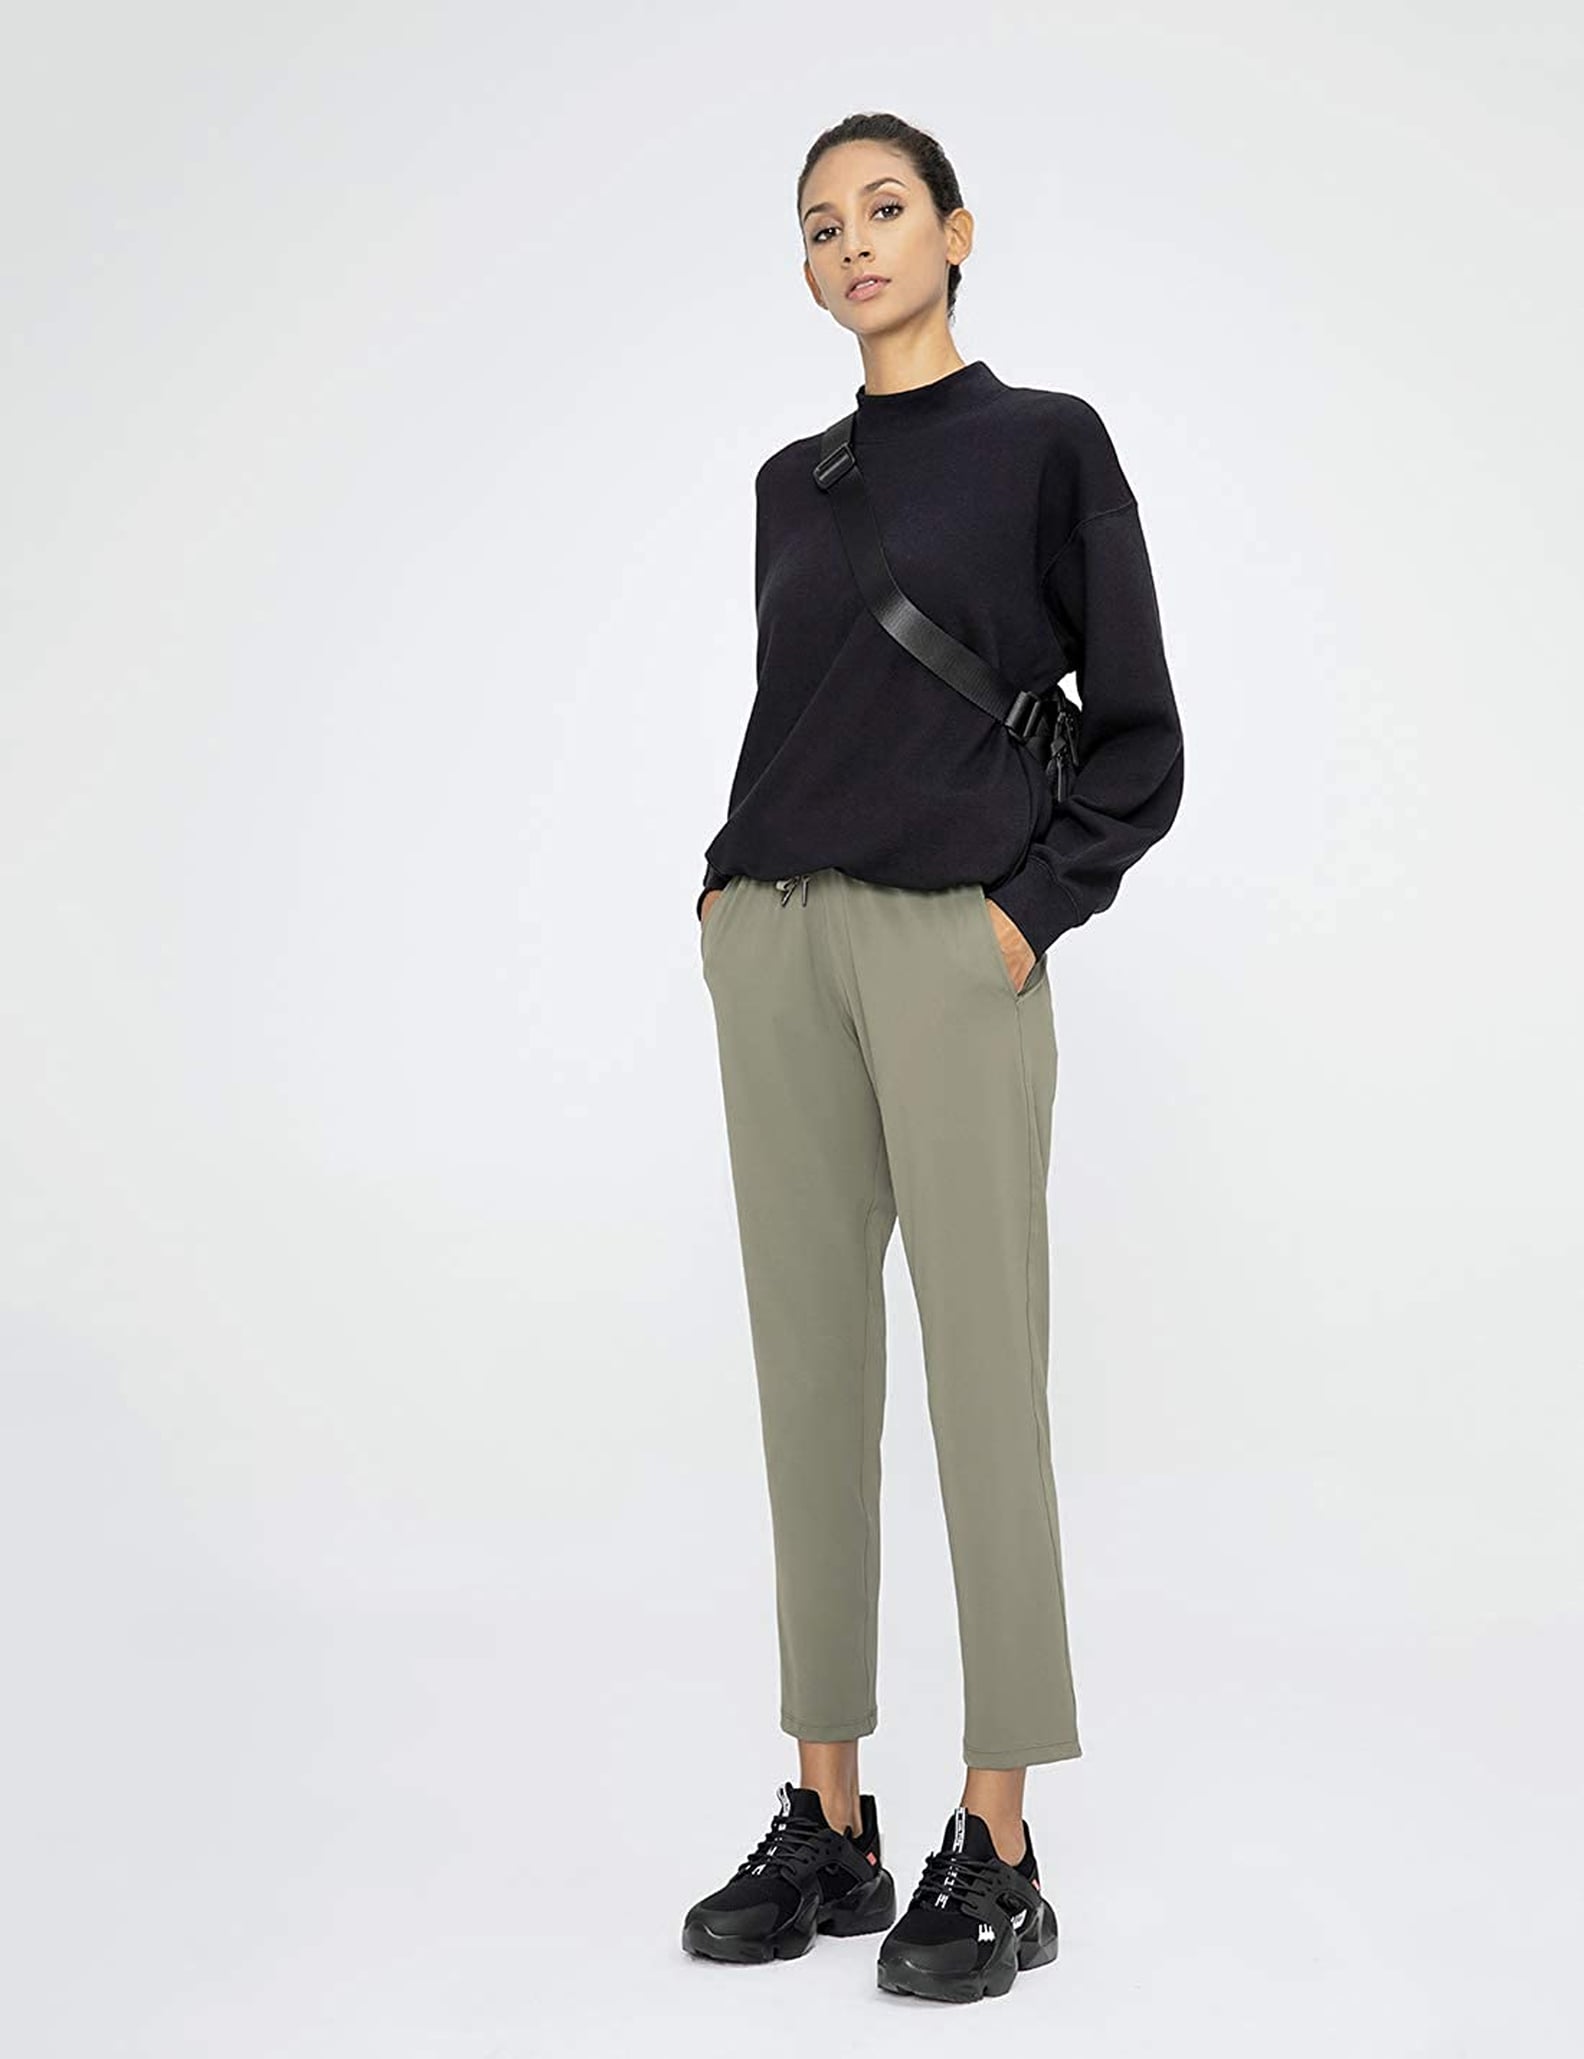 Cheap Pants For Women on Amazon | POPSUGAR Fashion